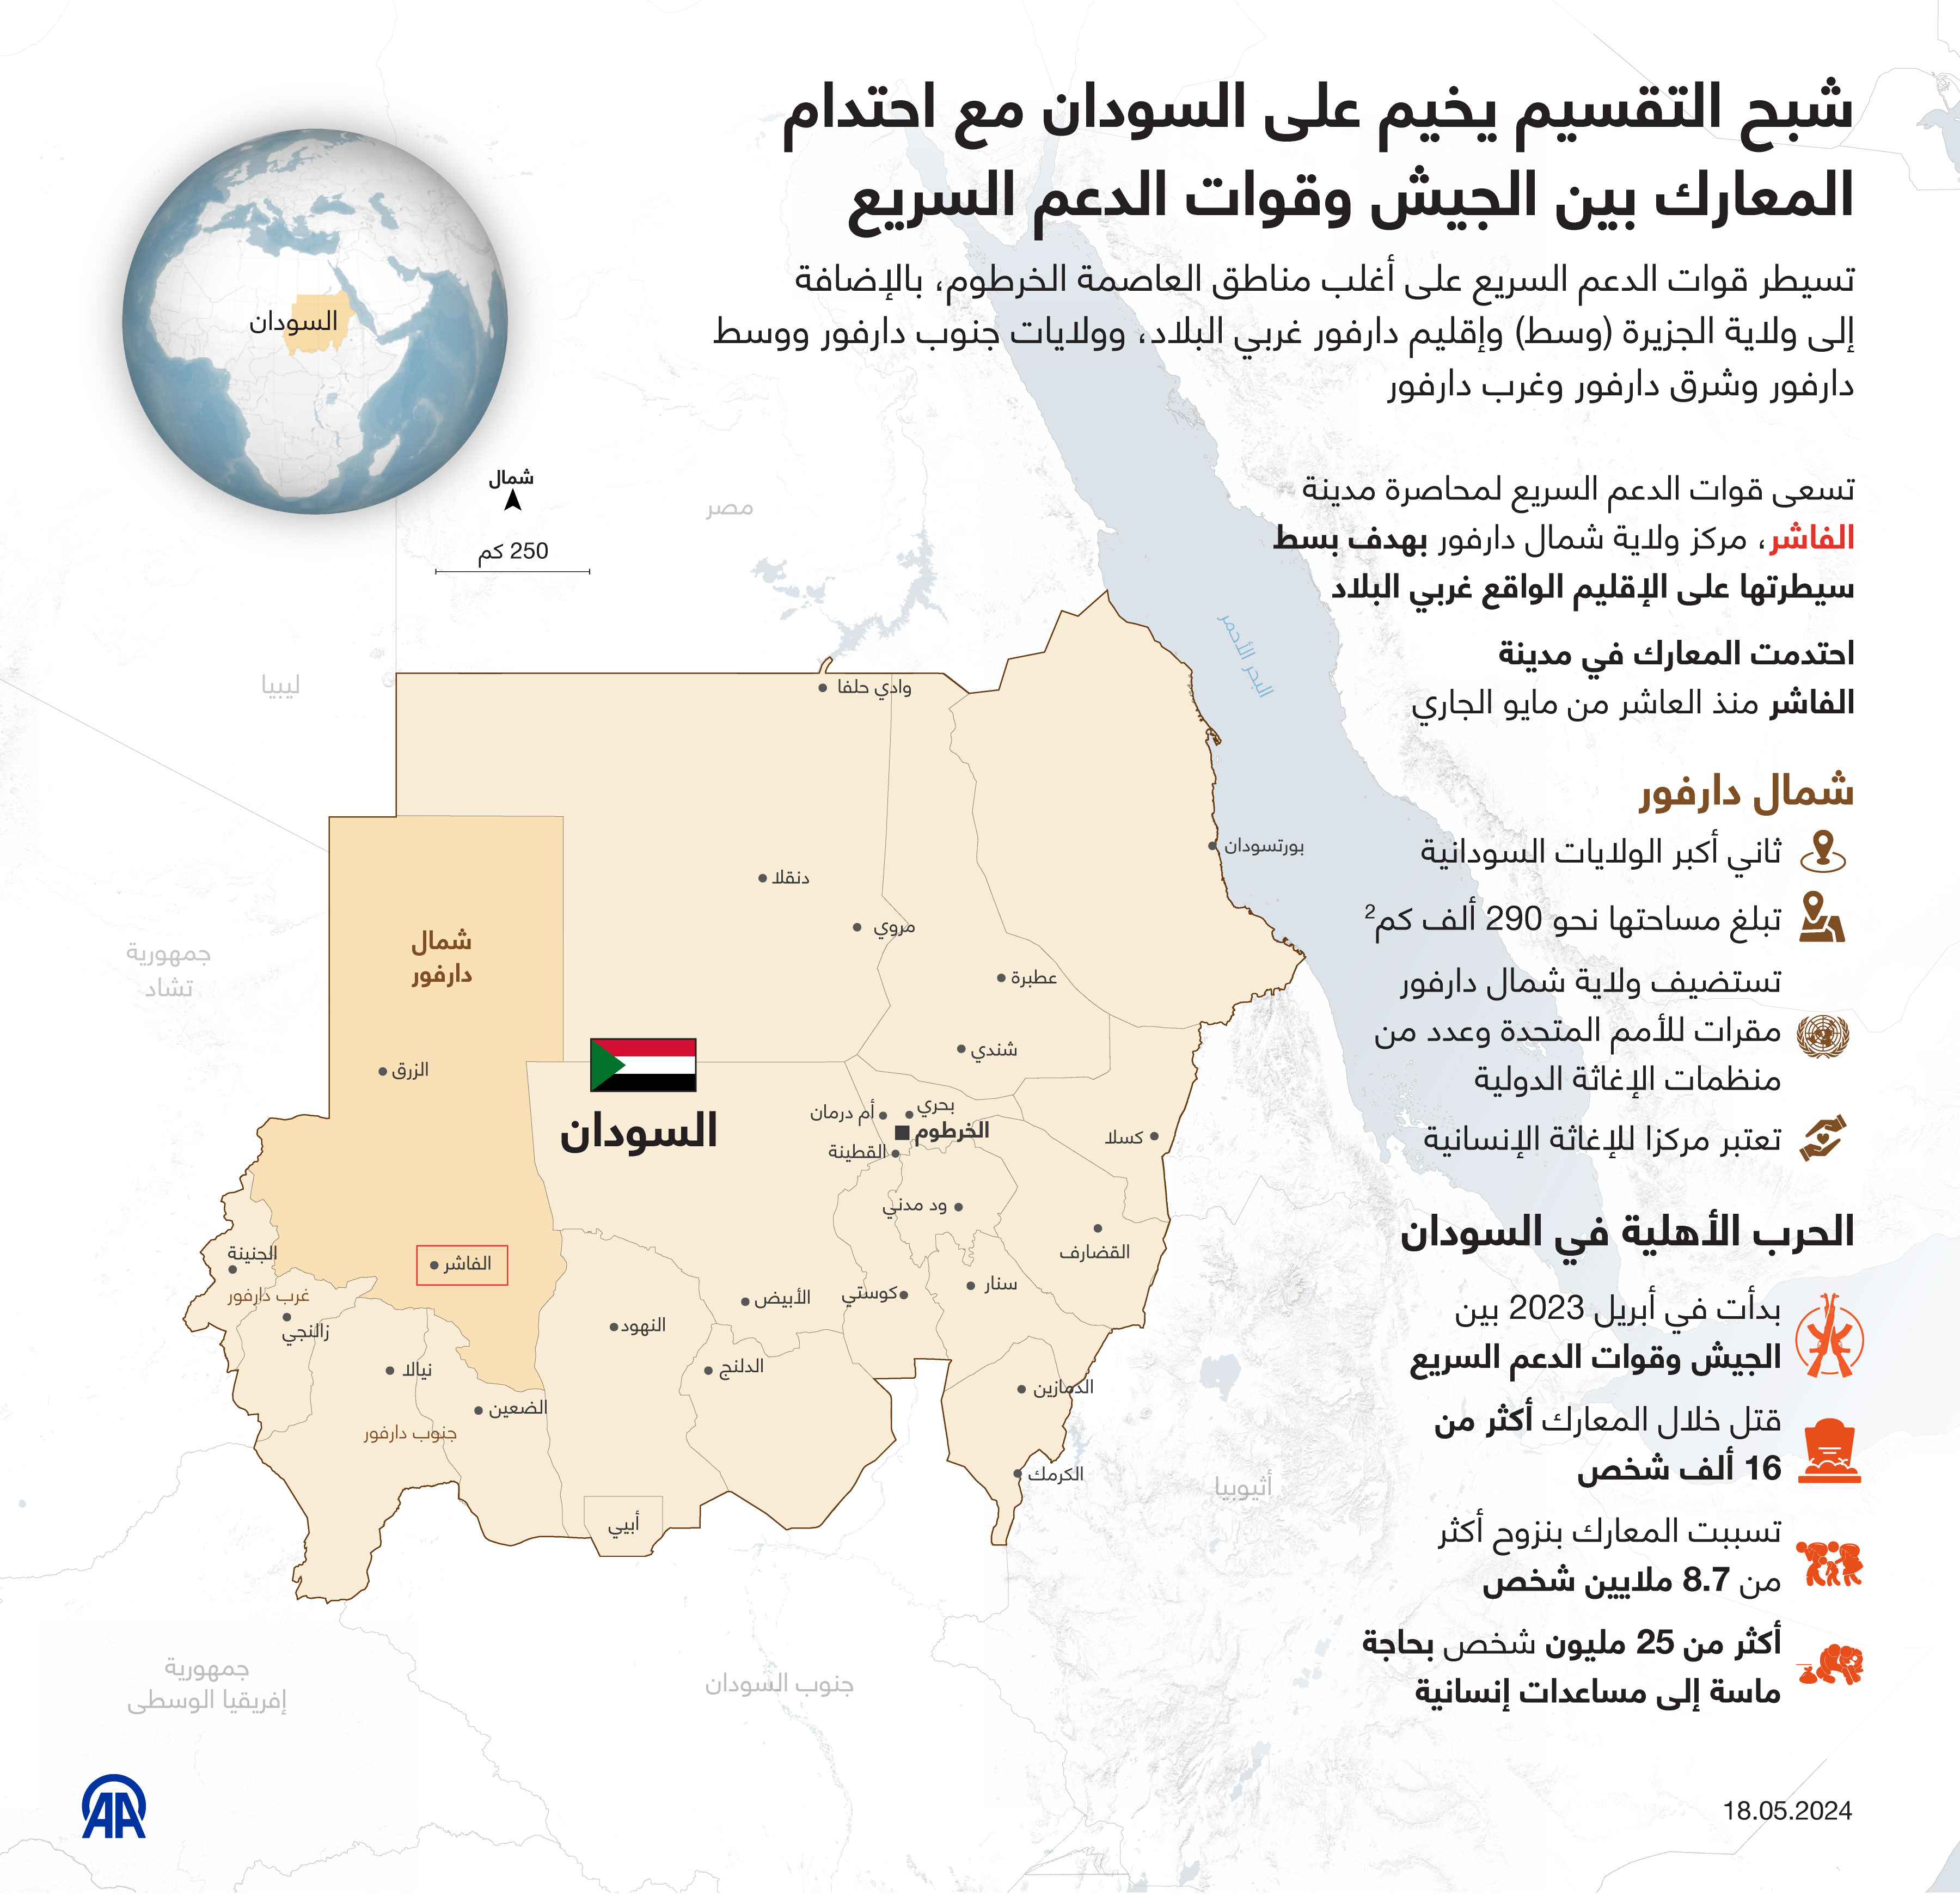 شبح التقسيم يخيم على السودان مع احتدام المعارك بين الجيش وقوات الدعم السريع